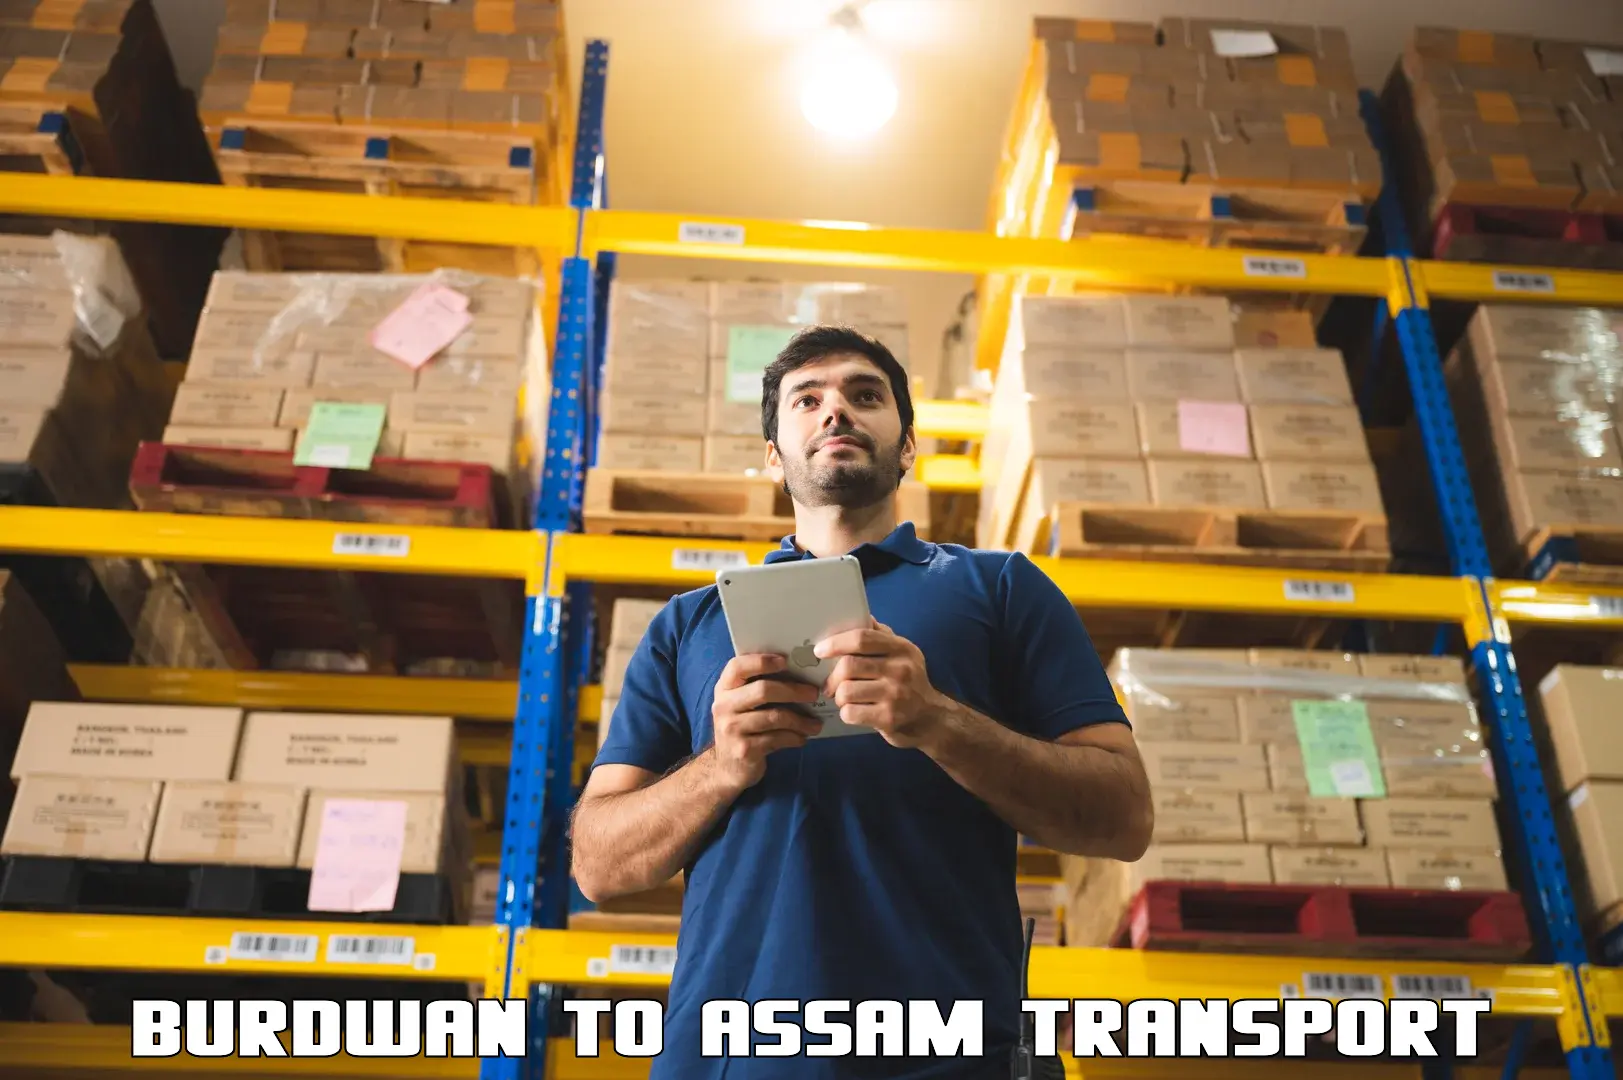 Online transport service Burdwan to Assam